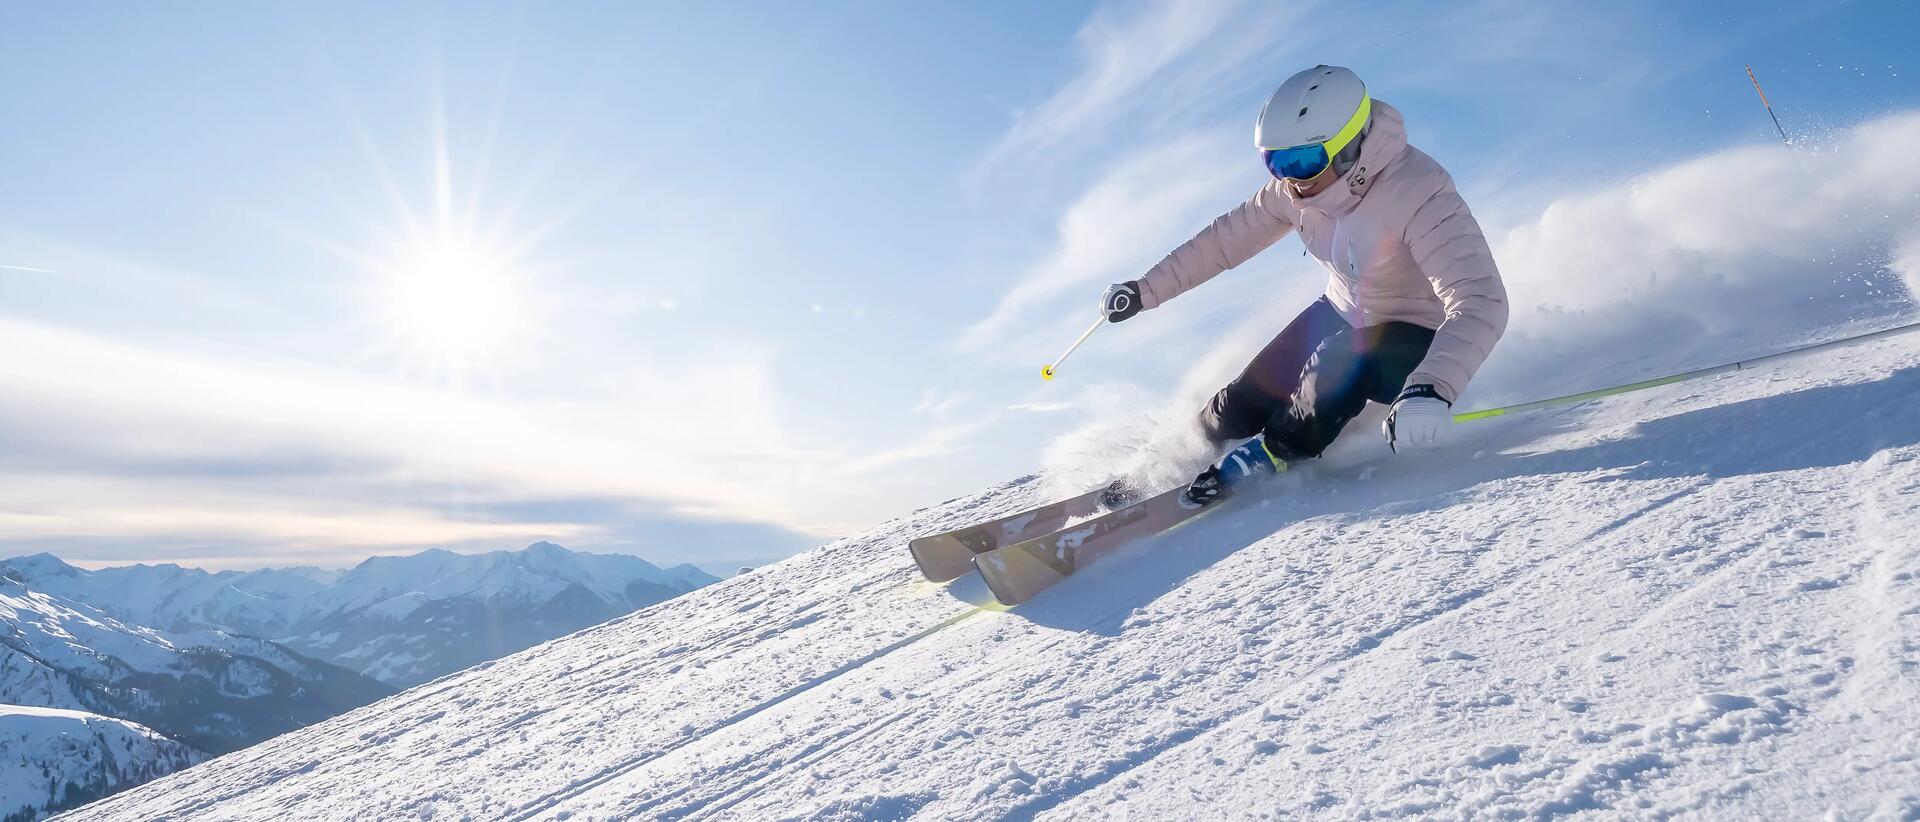 kobieta w stroju narciarskim zjeżdżająca na nartach